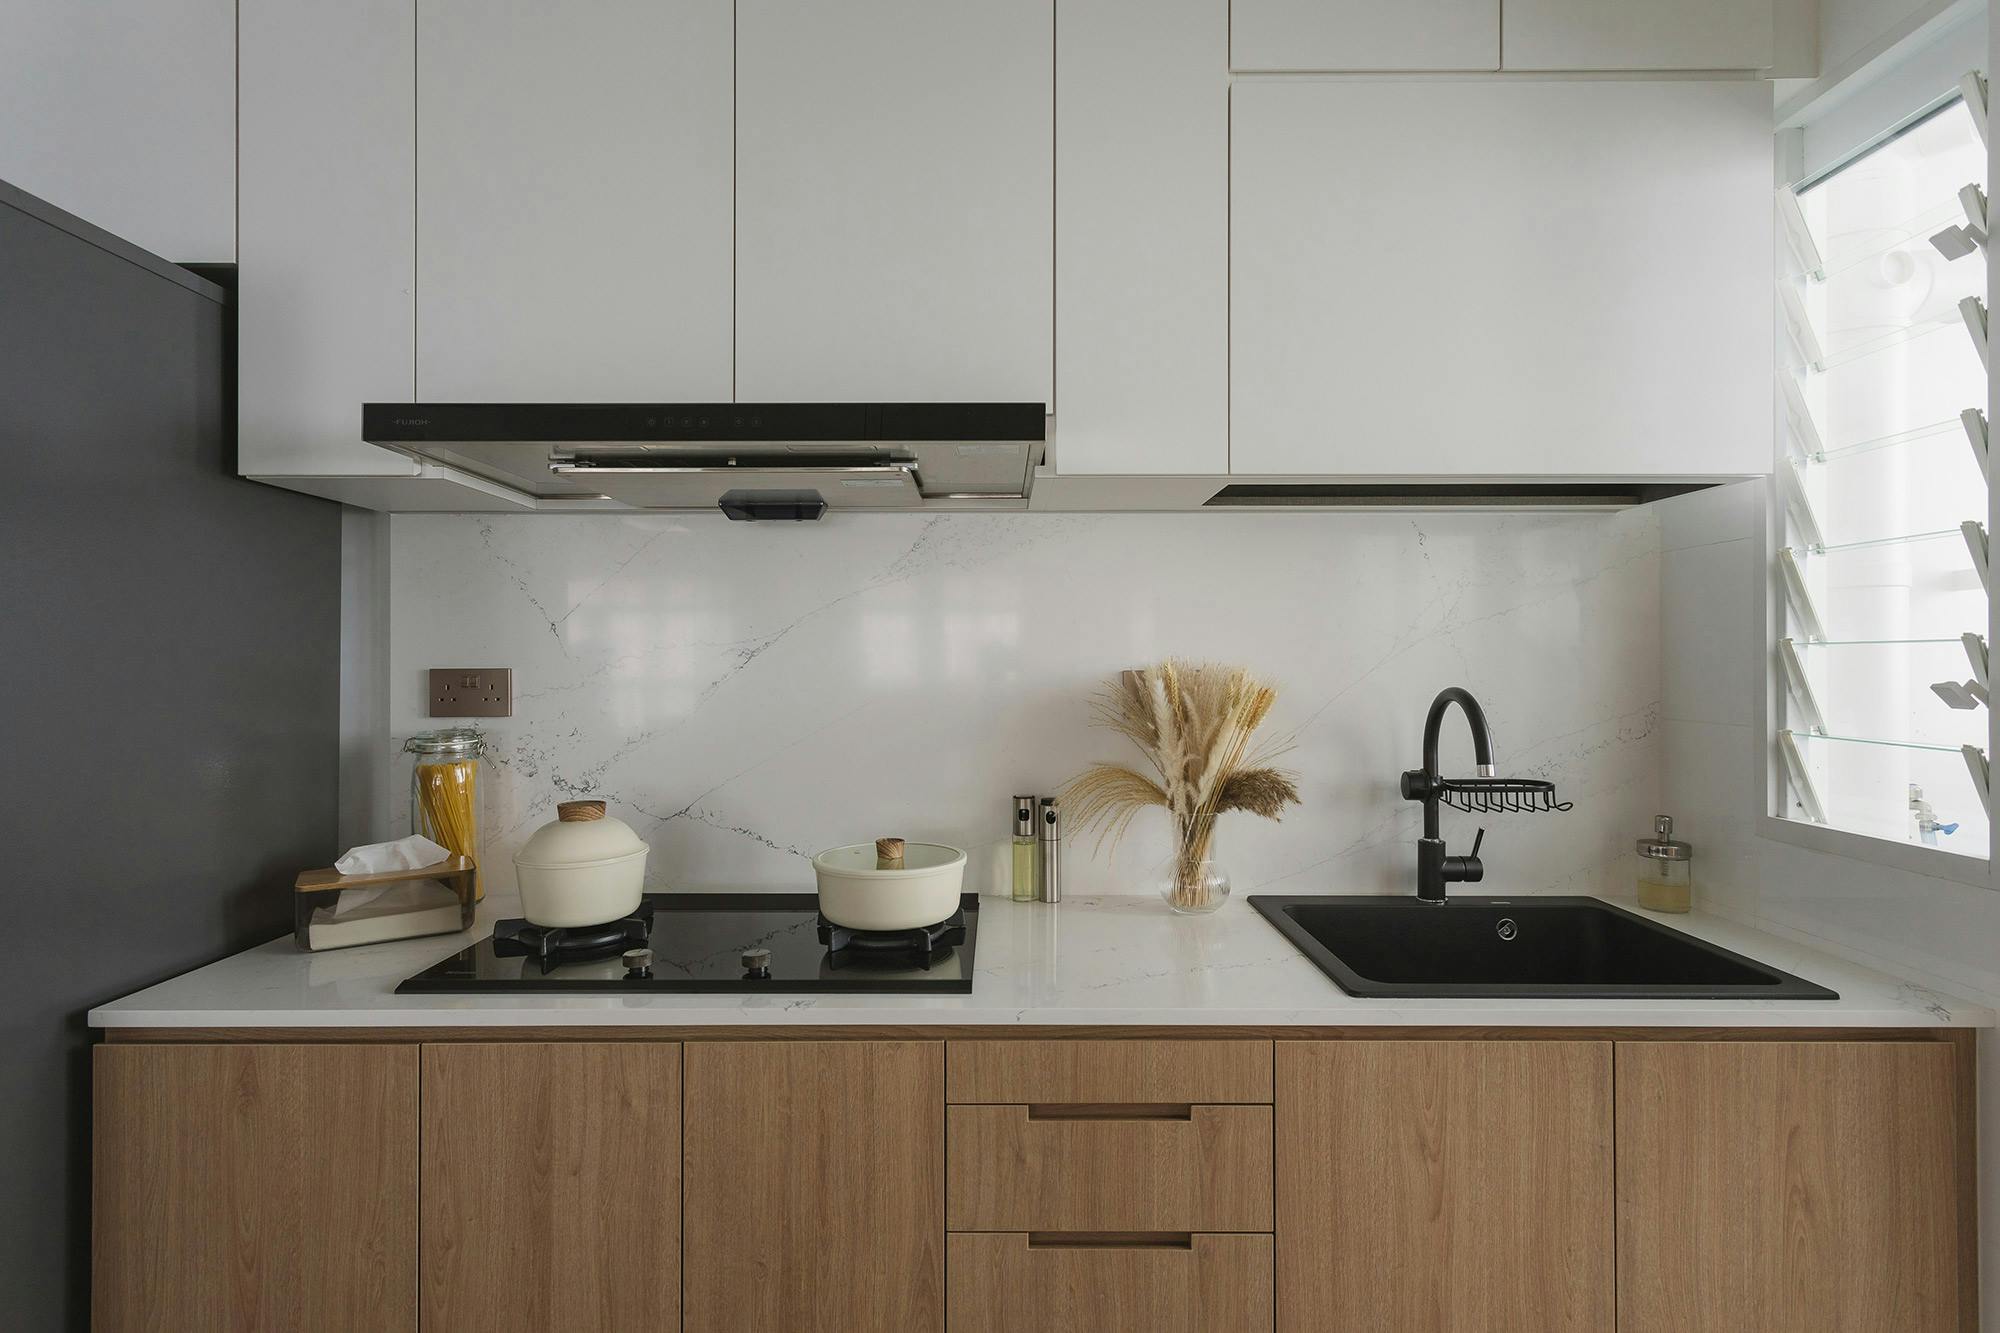 Číslo obrázku 34 aktuální sekce Dekton for the stunning kitchens of a residential tower in Dubai Cosentino Česká Republika